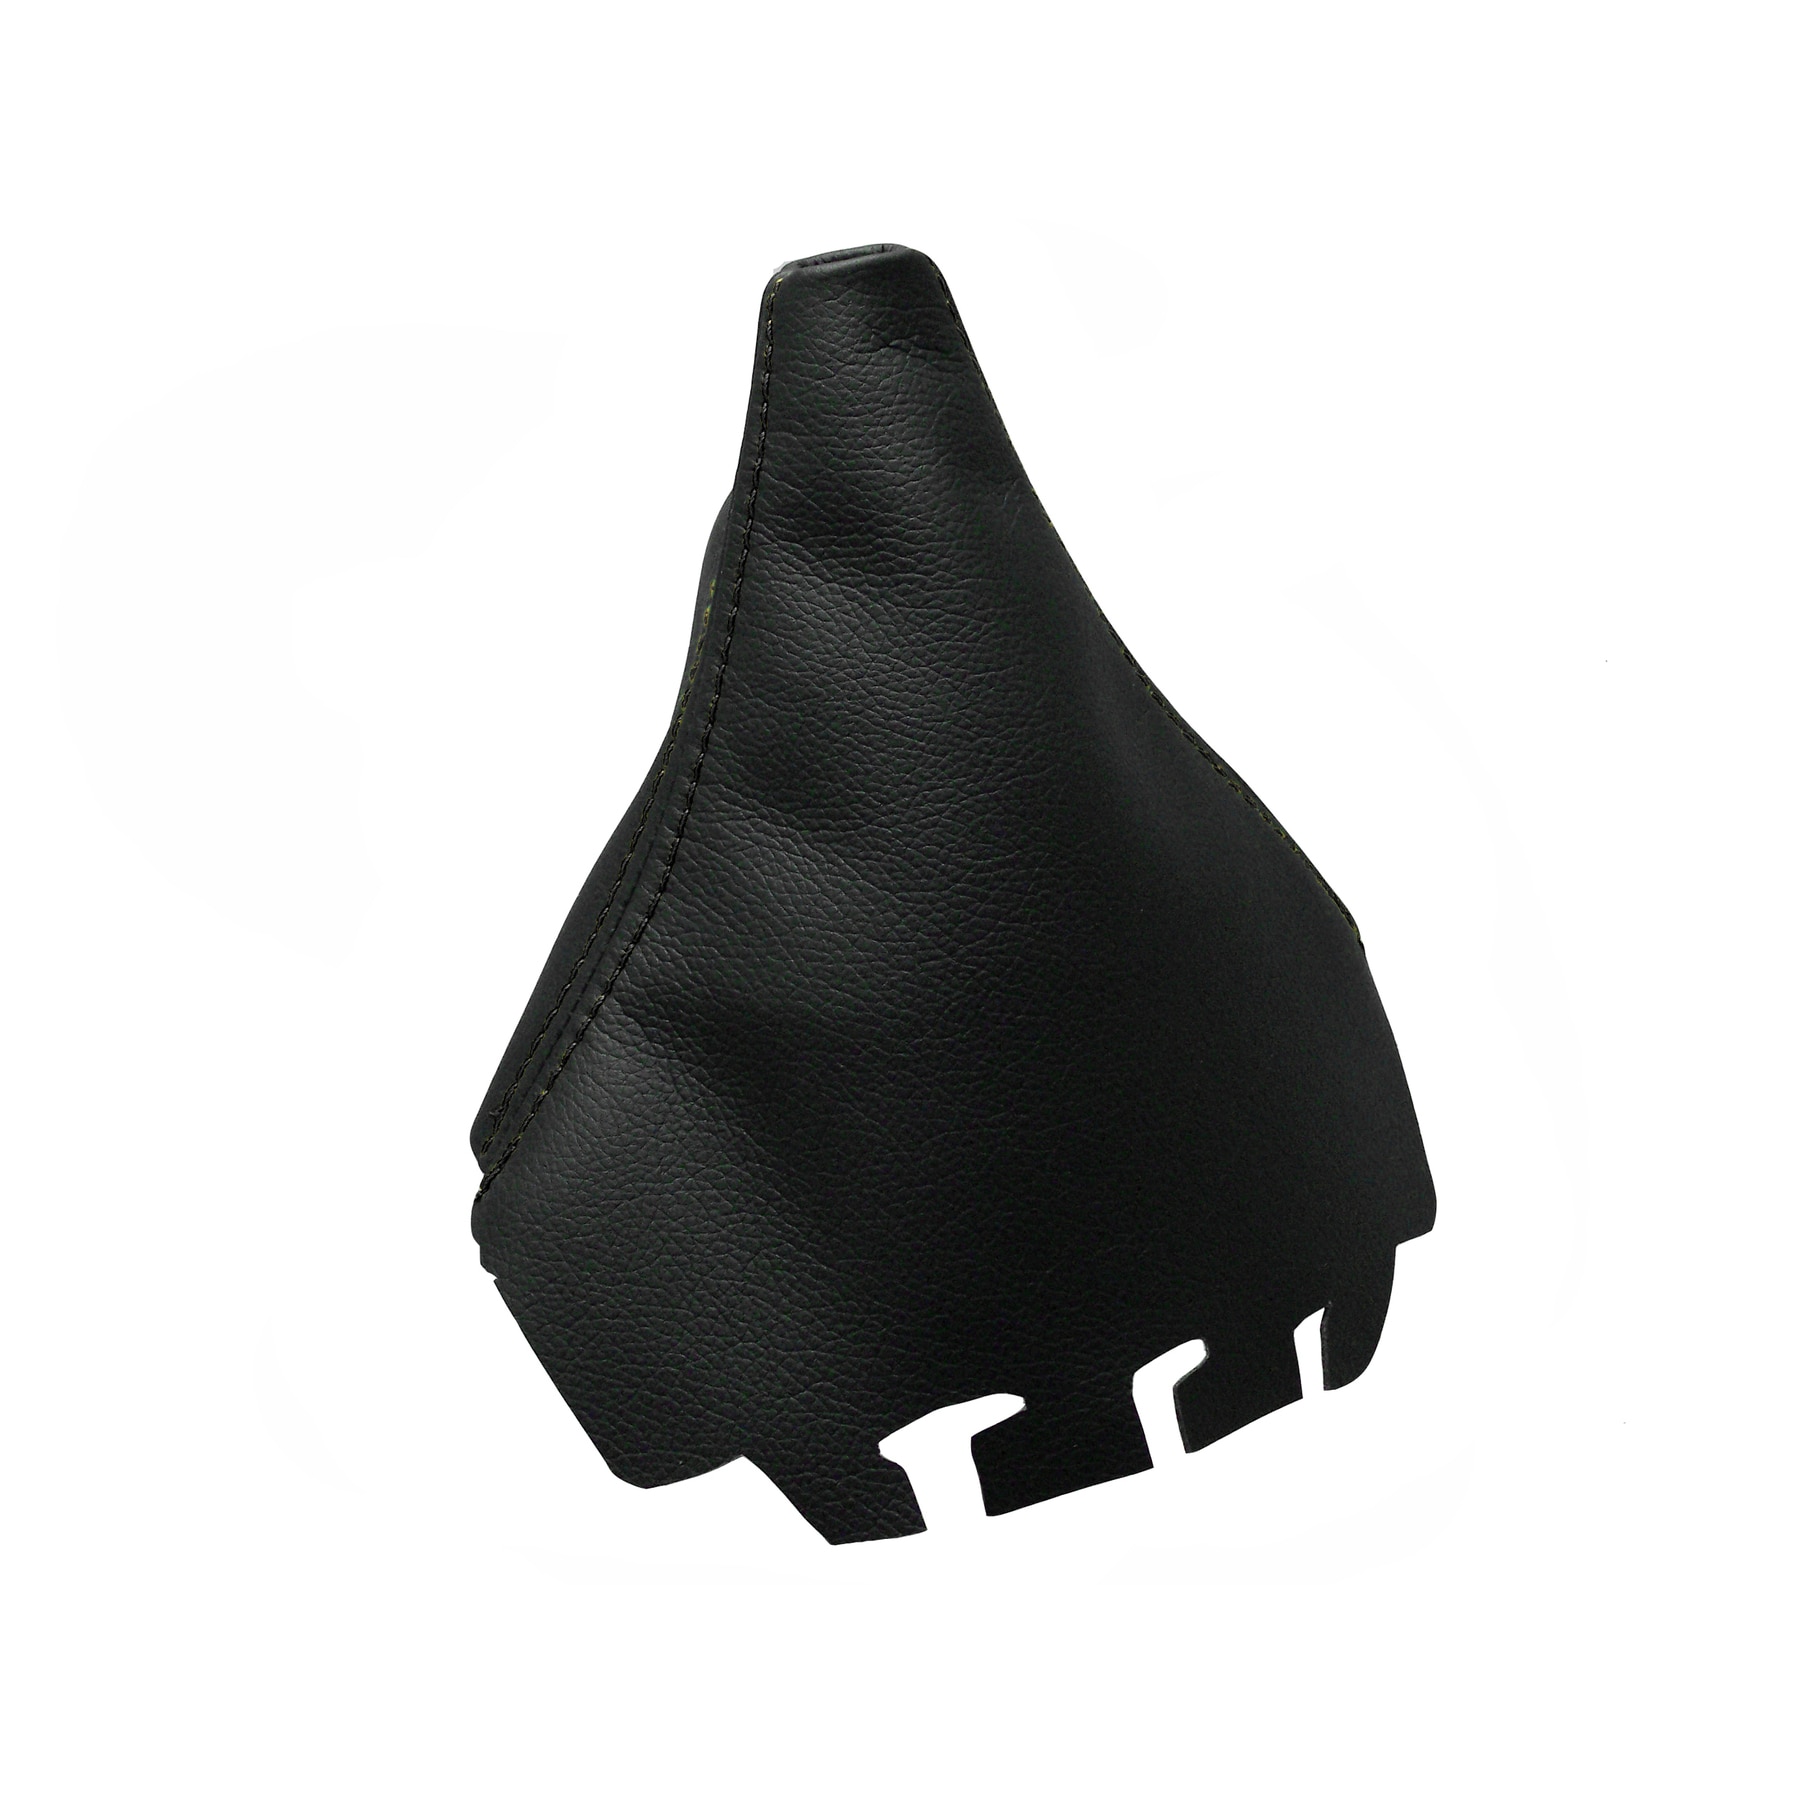 Cargaiter-SeatIbiza (2002) stand case Shifter tweede accessoires Compatibel met dubbele Costura in Zwart geplaatst